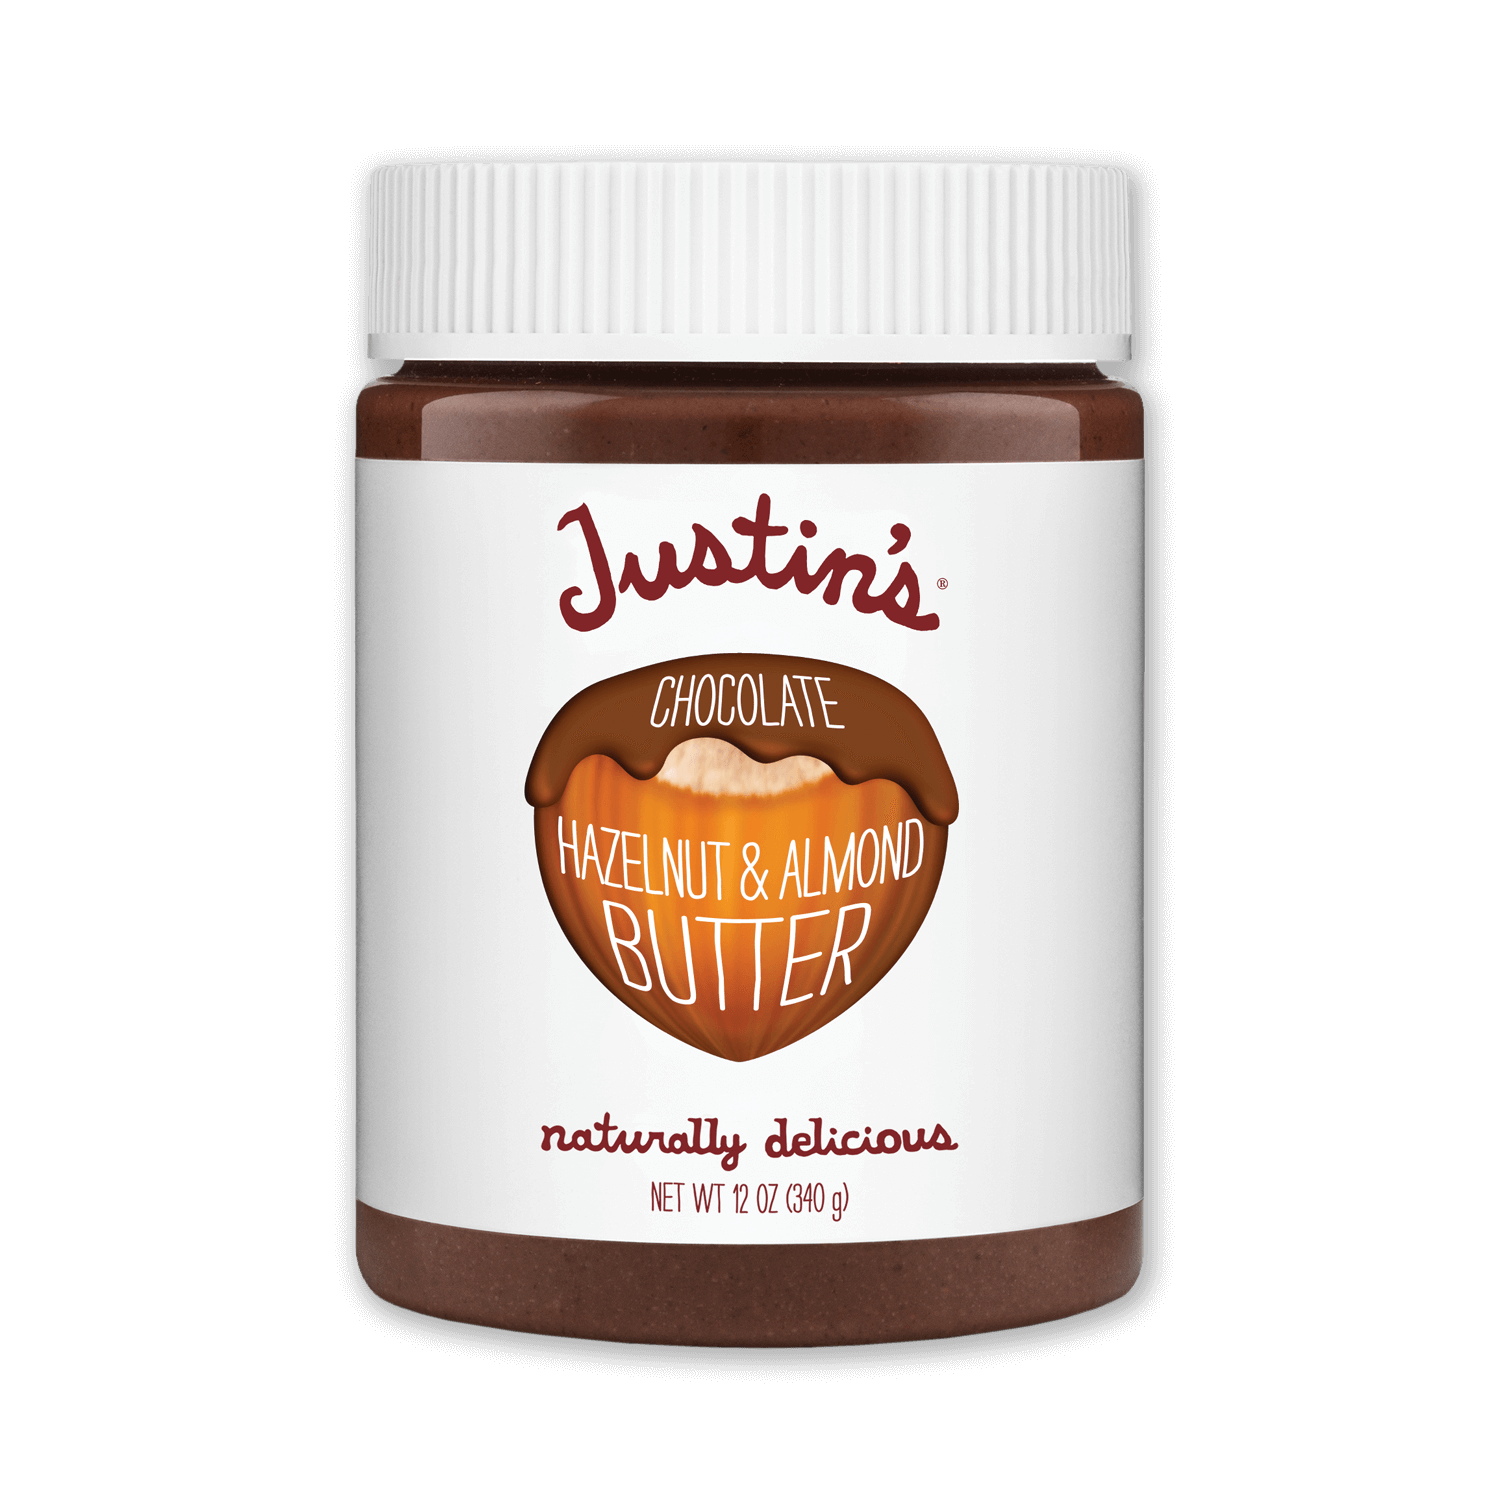 Justin's Chocolate Hazelnut & Almond Butter Spread jar 12 oz.